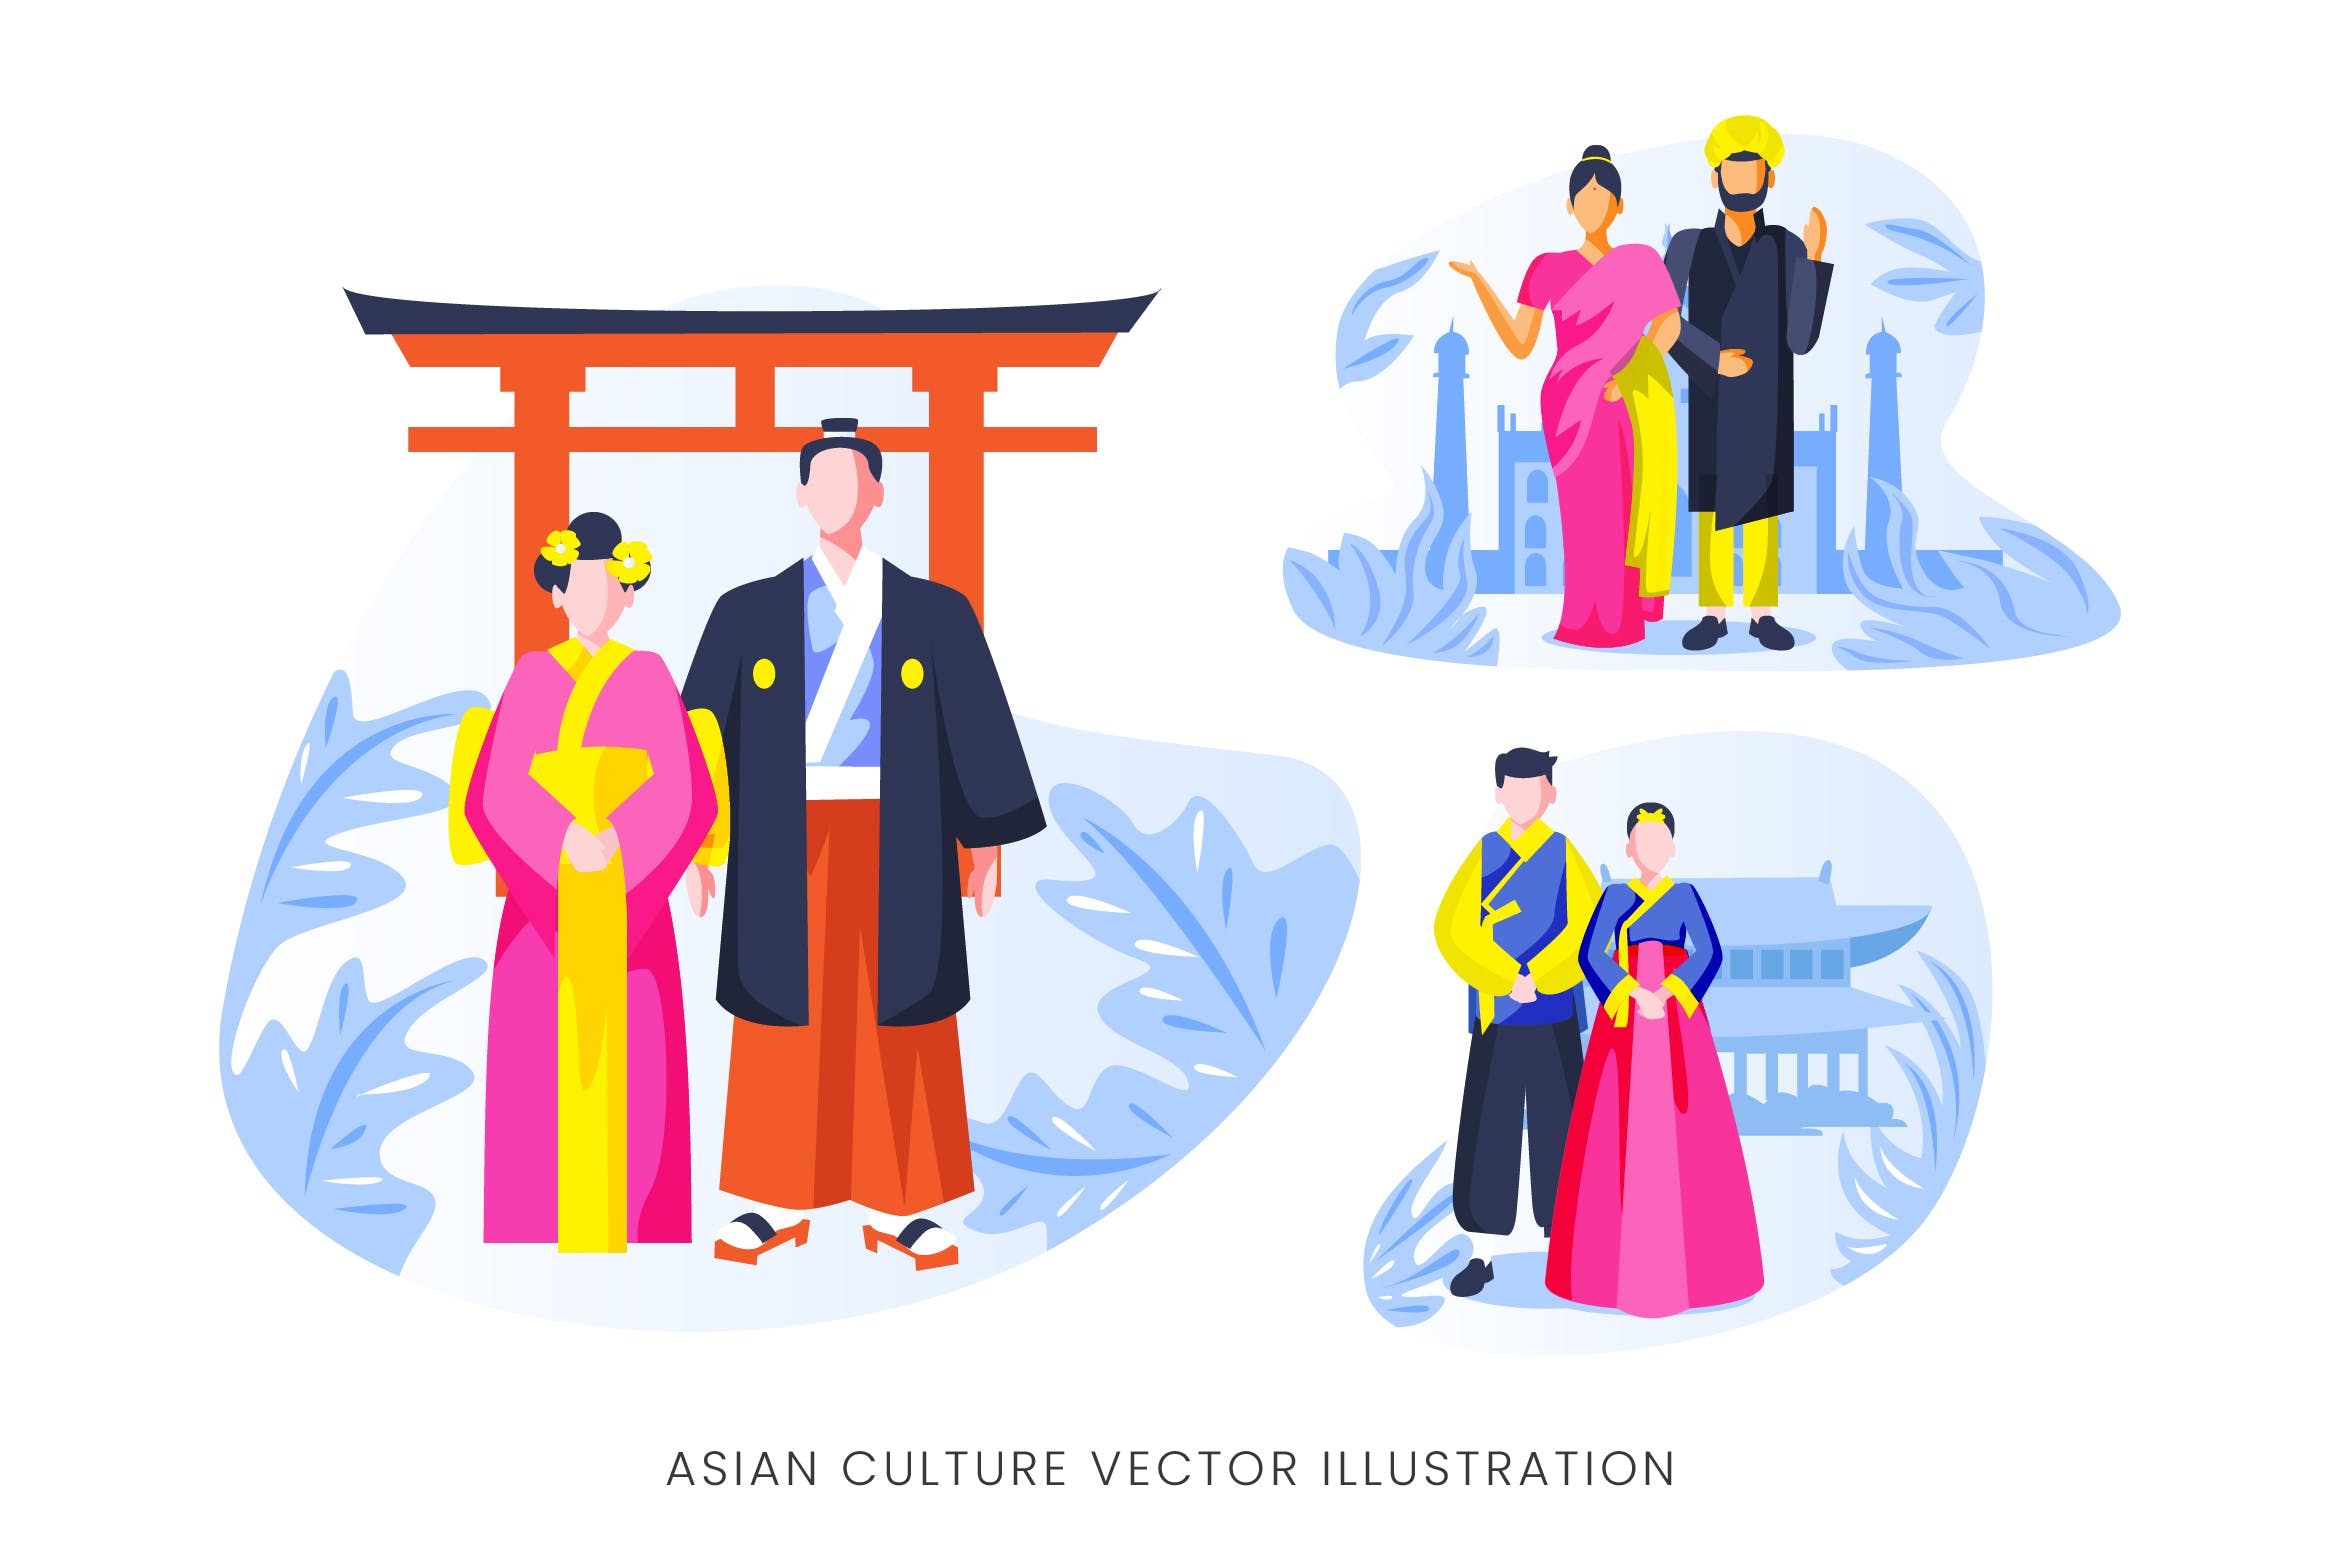 亚洲文化人物形象素材库精选手绘插画矢量素材 Asian Culture Vector Character Set插图